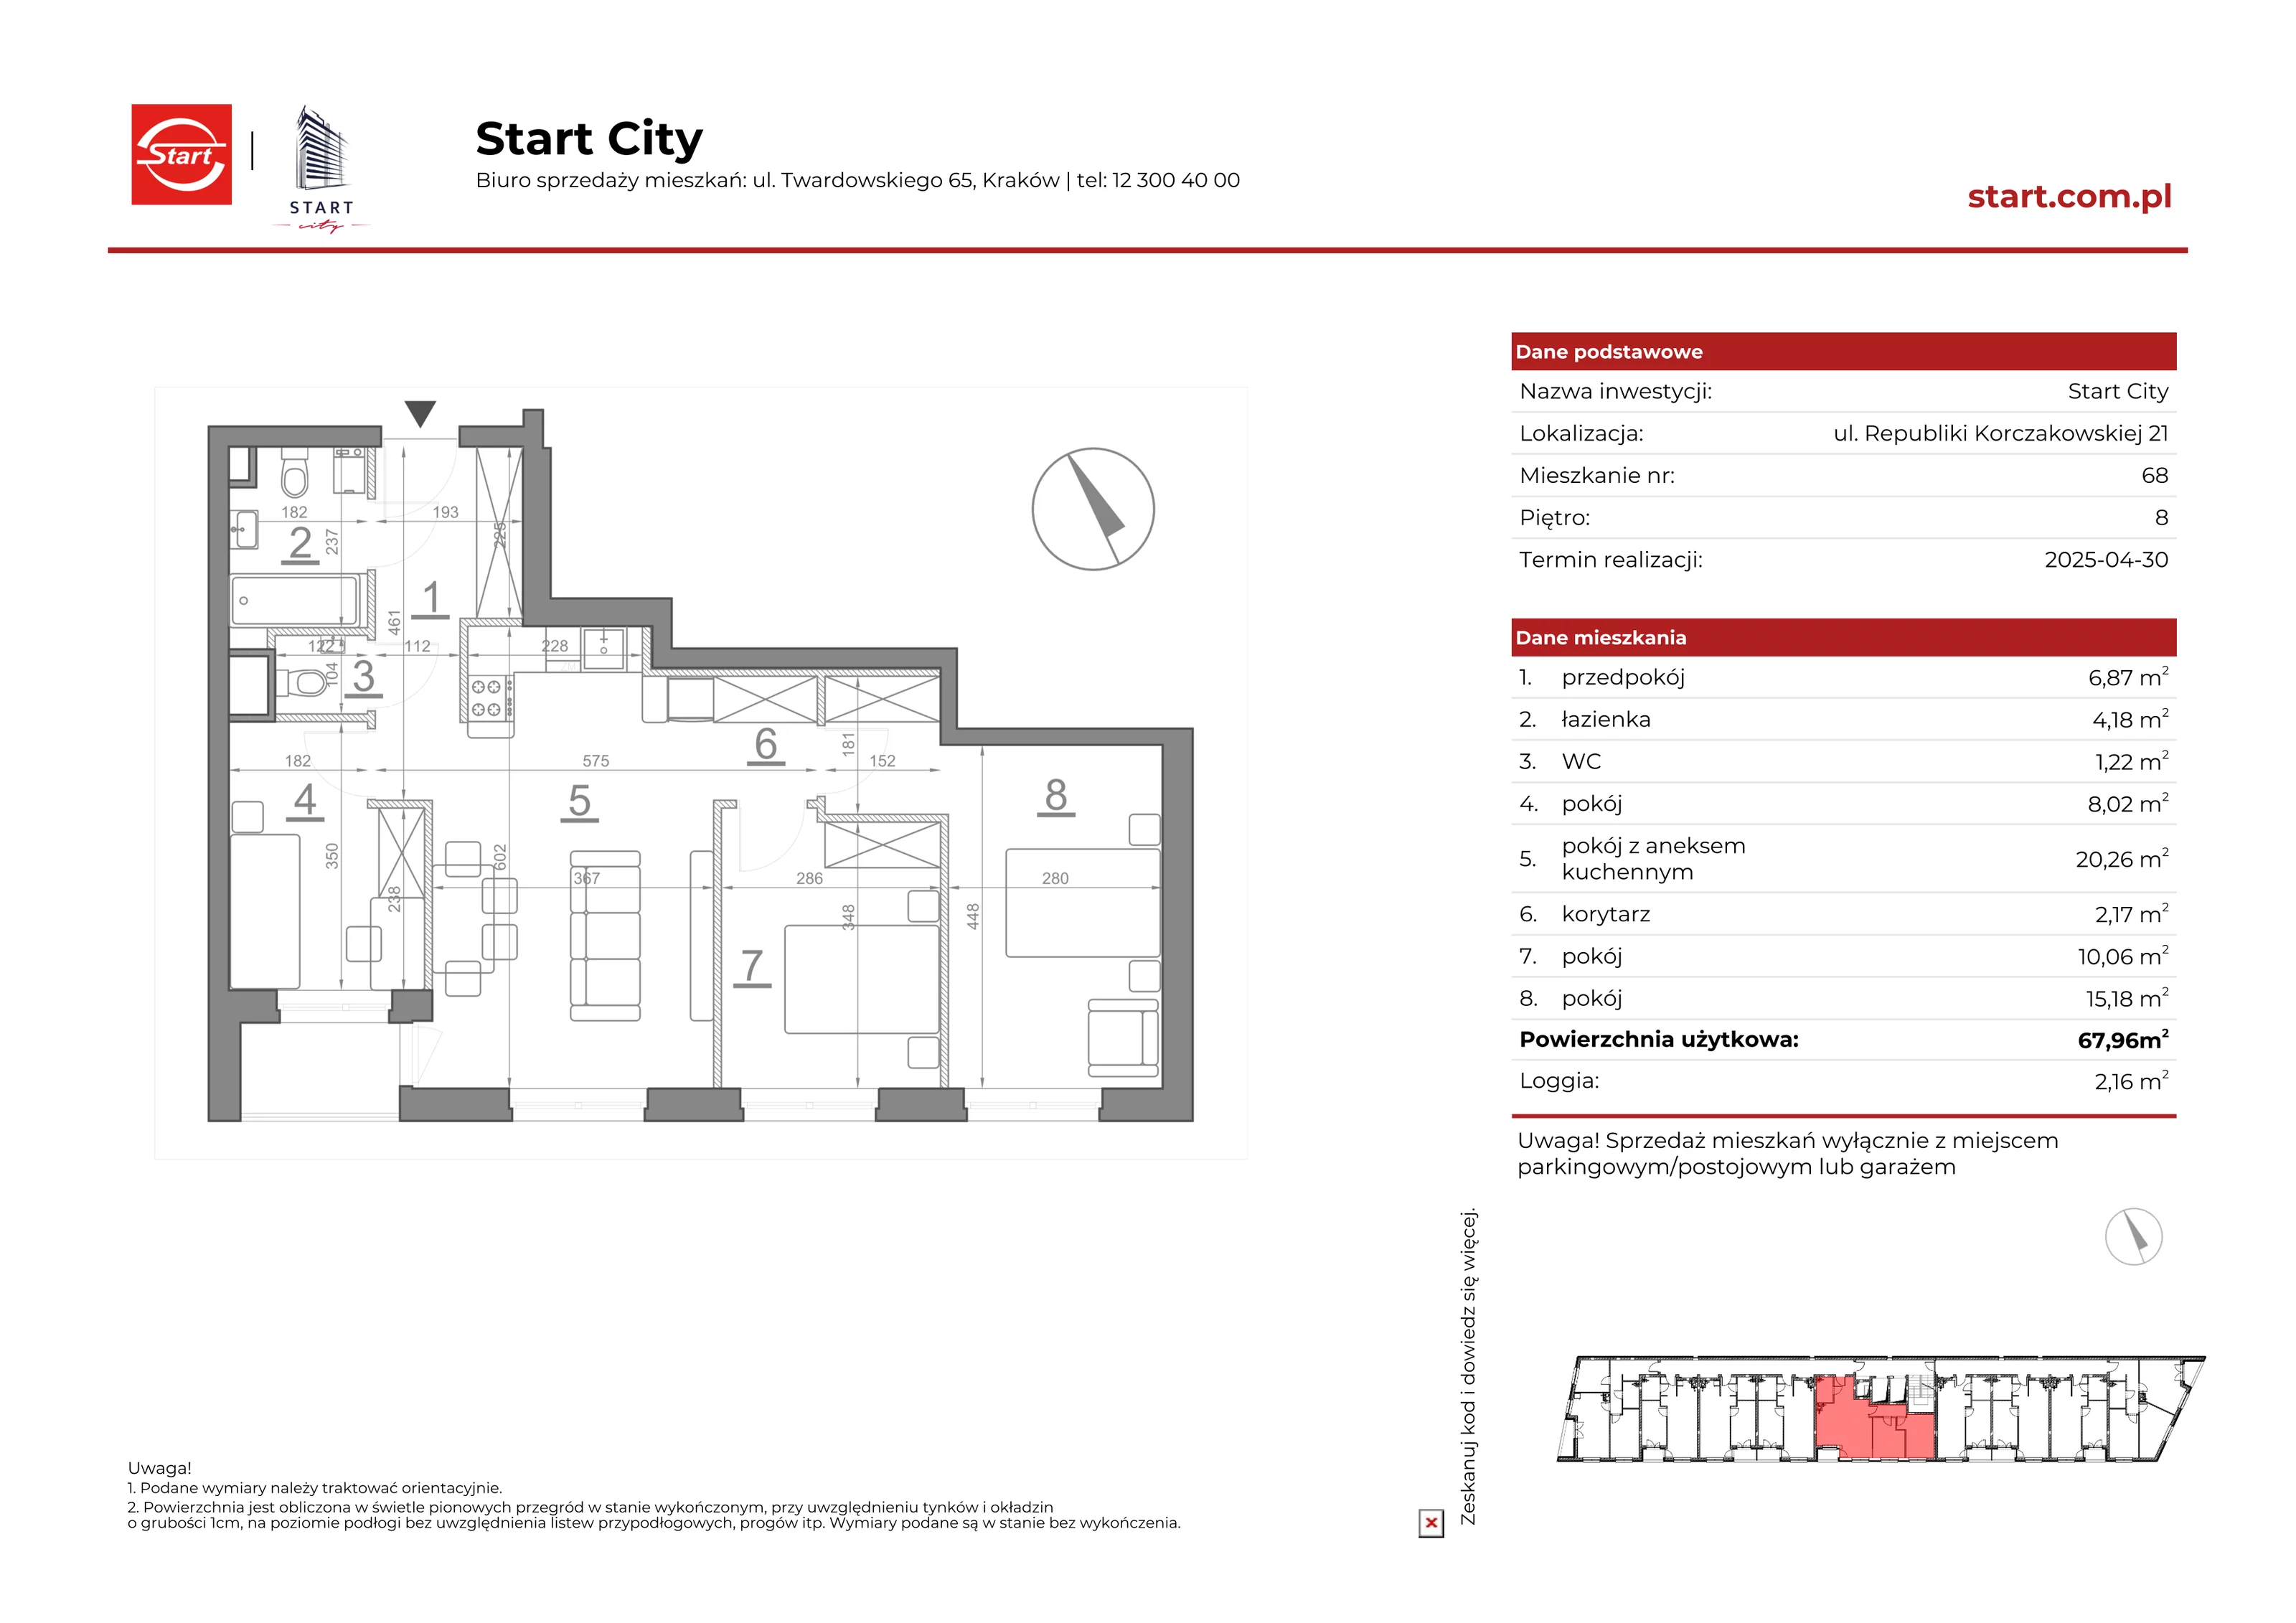 Mieszkanie 67,96 m², piętro 8, oferta nr 21/68, Start City, Kraków, Bieżanów-Prokocim, ul. Republiki Korczakowskiej 21